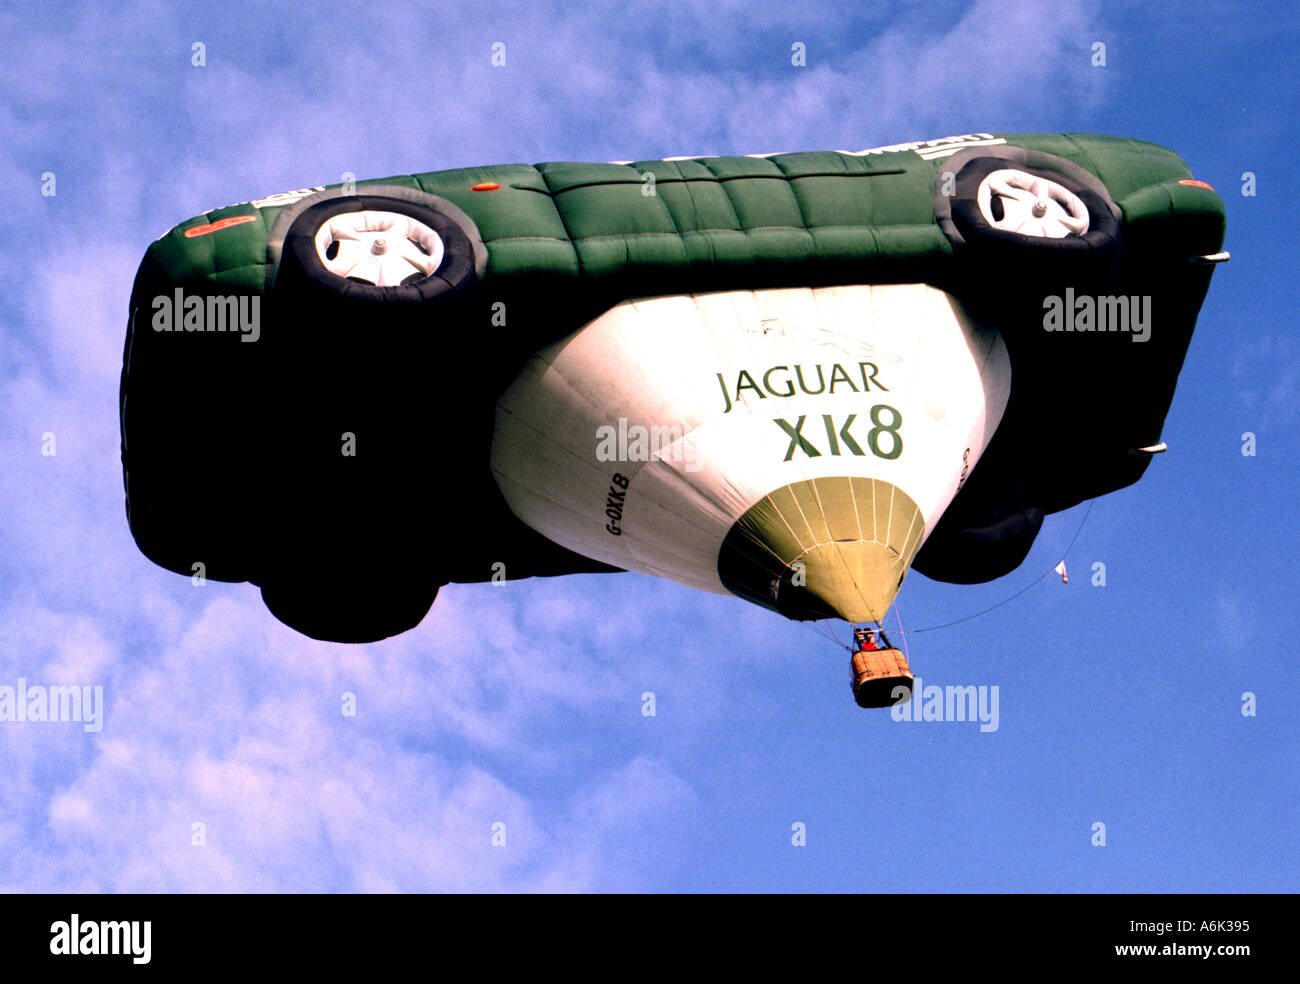 Jaguar XK8 Hot Air Balloon 1  Stock Photo